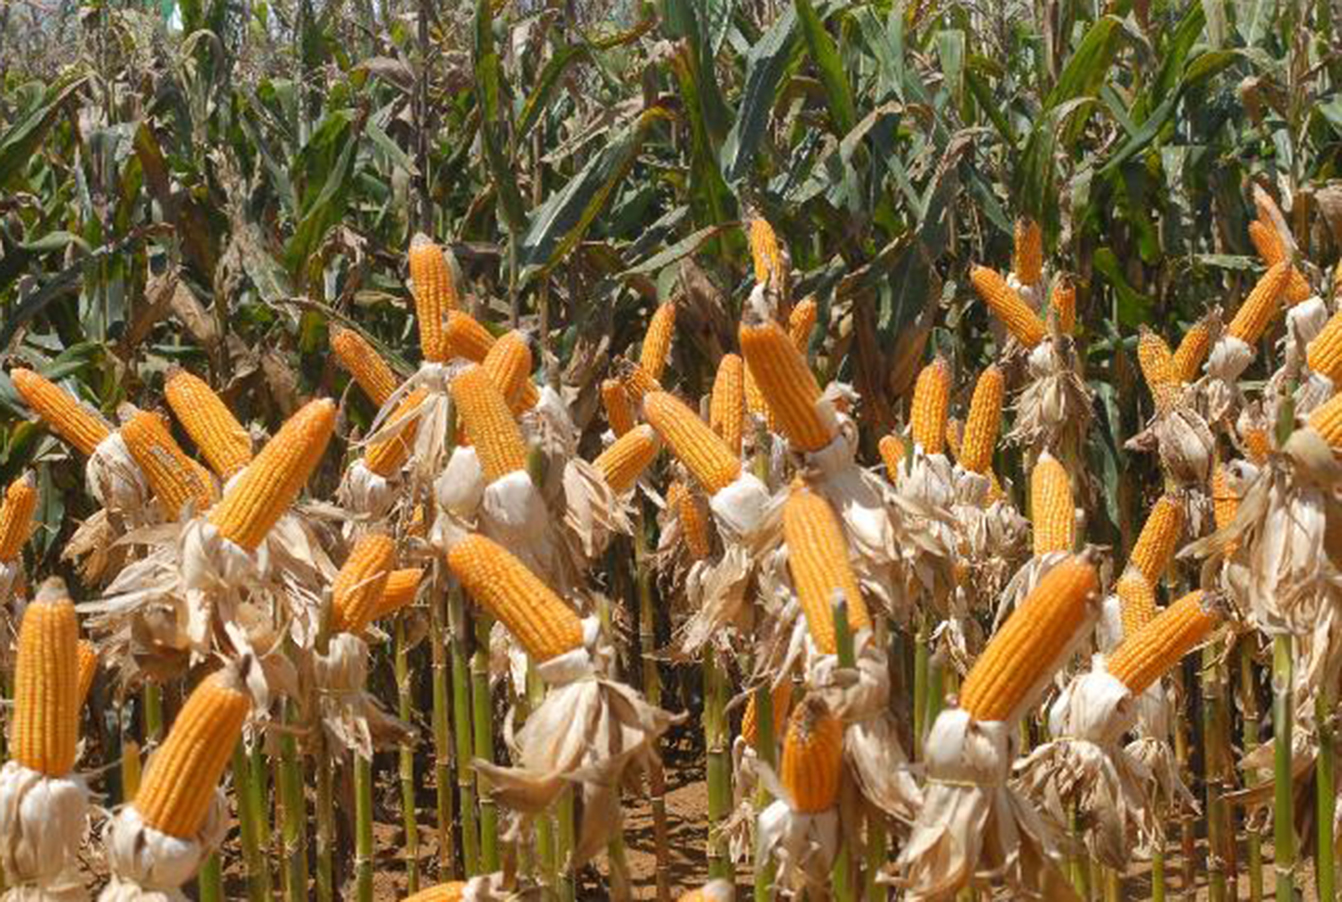 Congresso de milho e sorgo debate avanços nas cadeias produtivas dos dois cereais